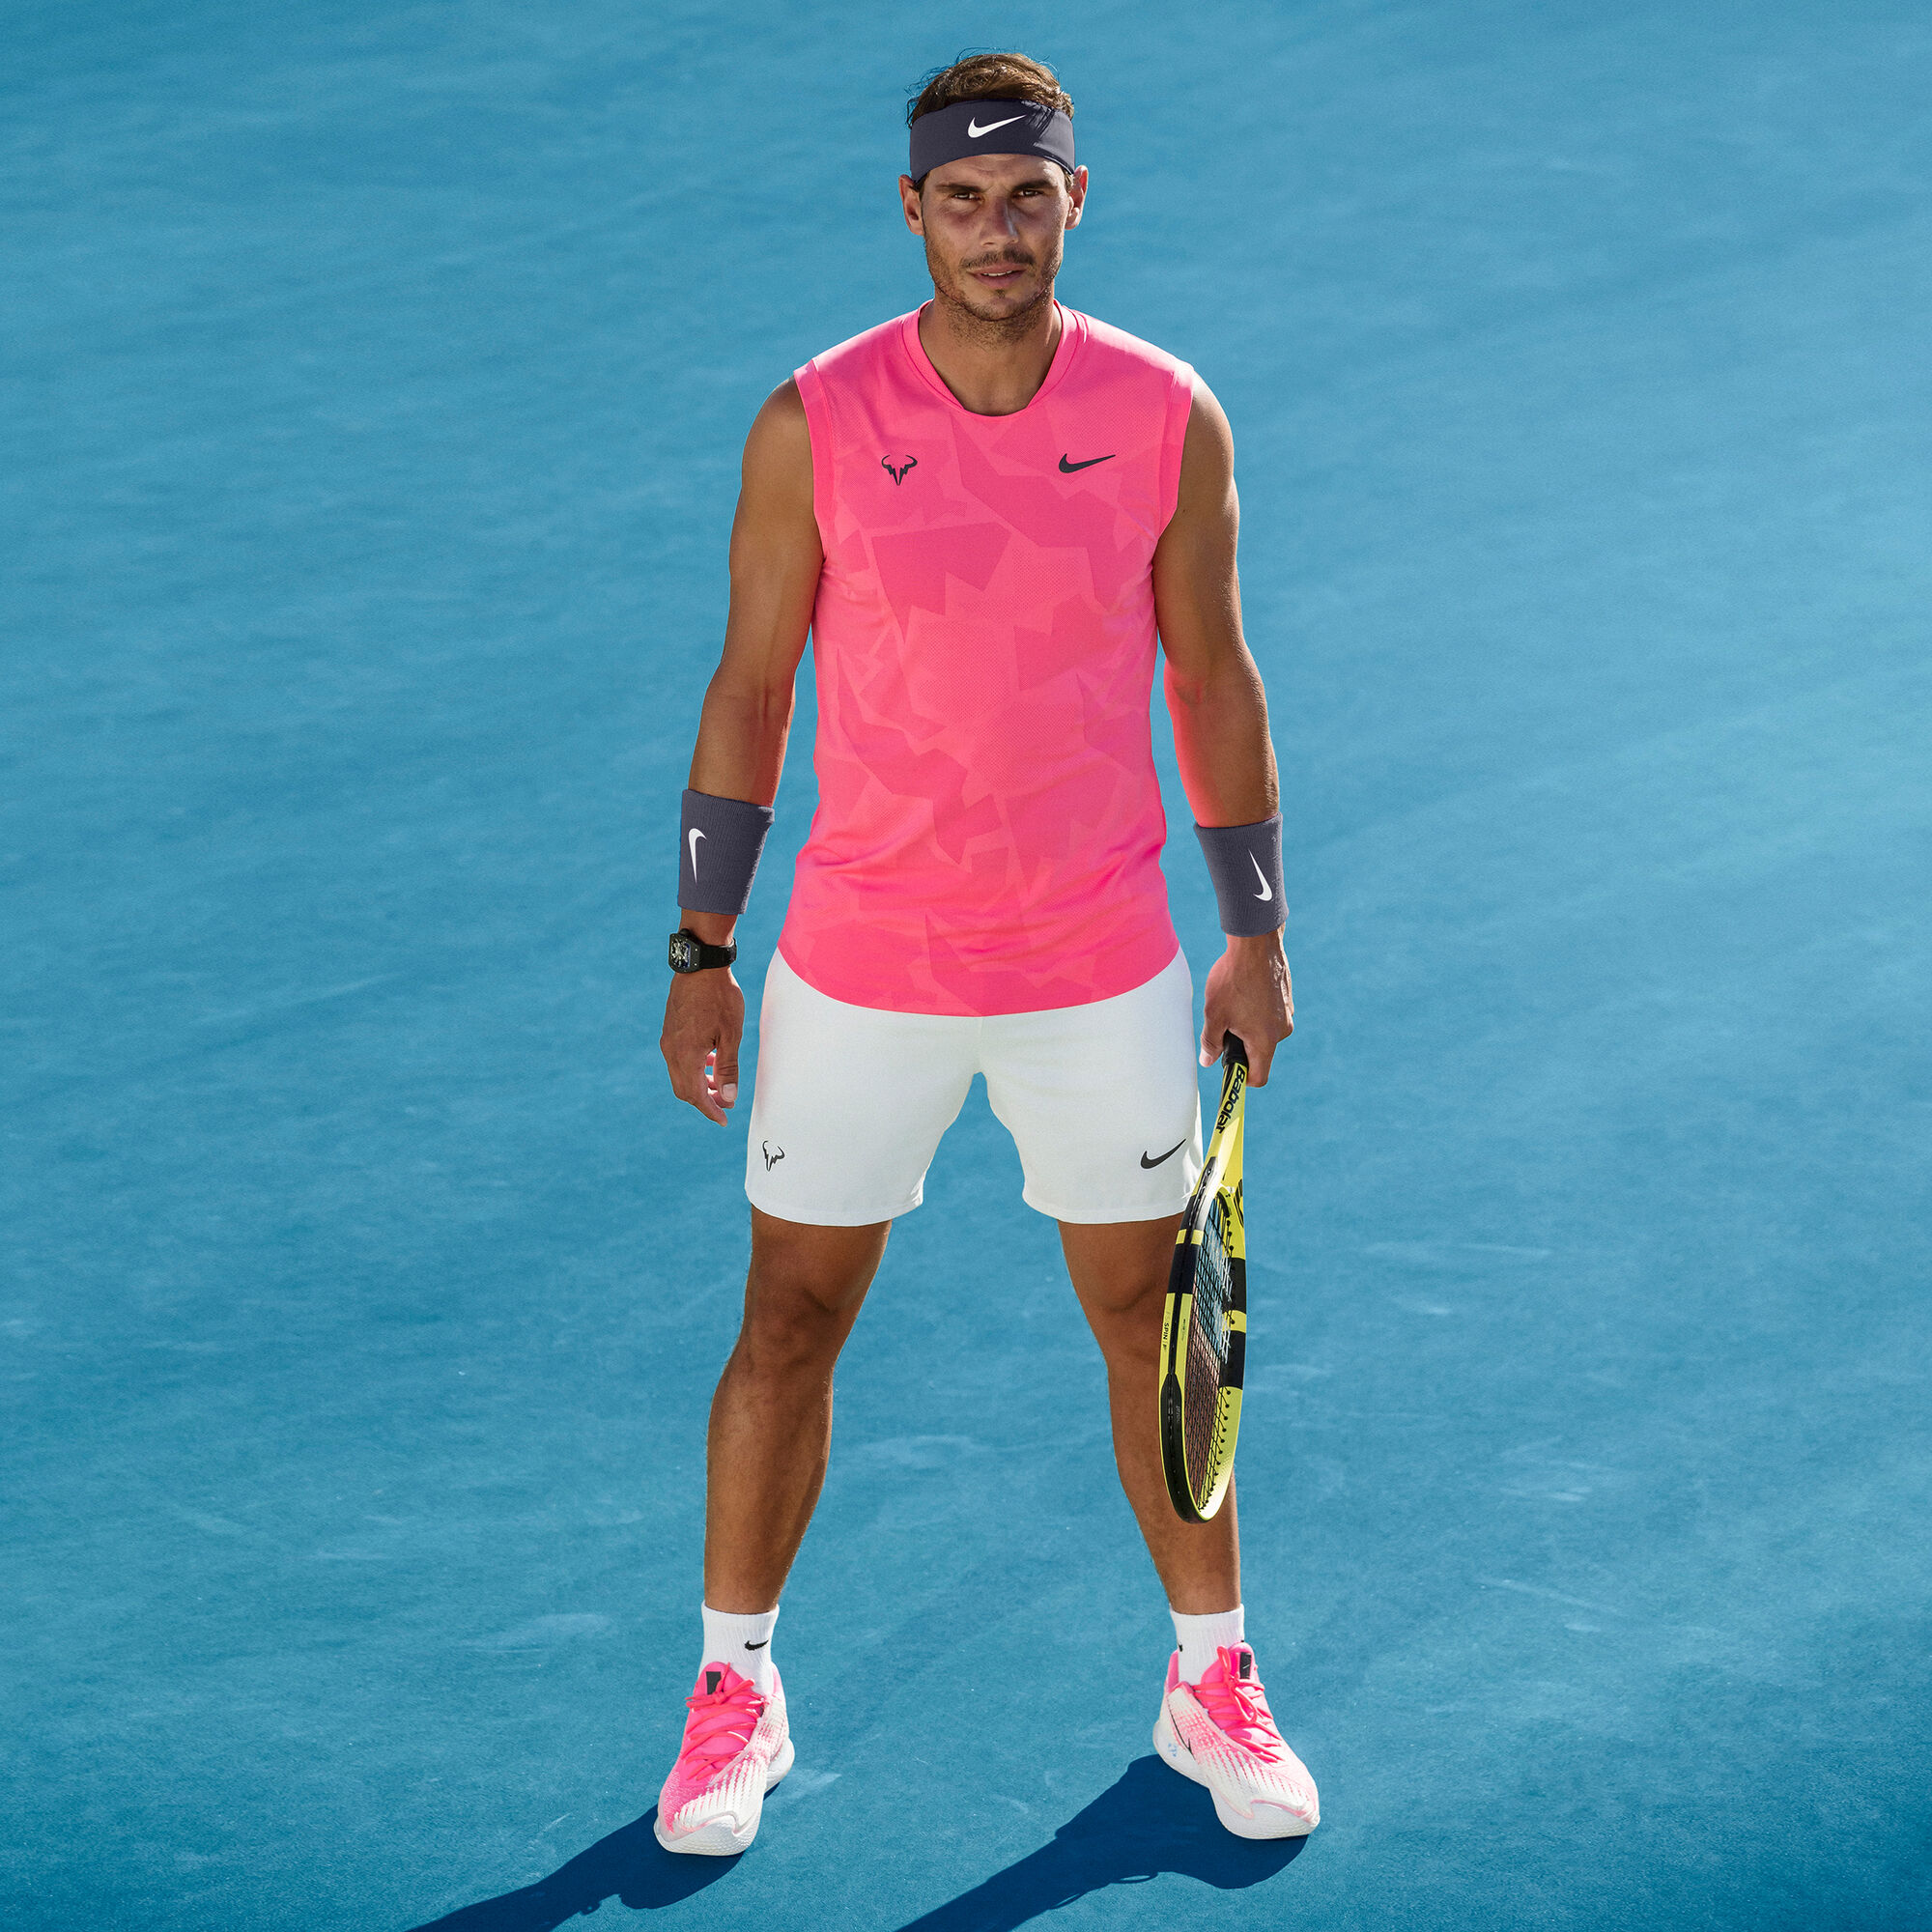 Nike Rafael Nadal Zoom Vapor Cage 4 Clay Gravelschoen Heren - Pink, Wit kopen | Tennis-Point